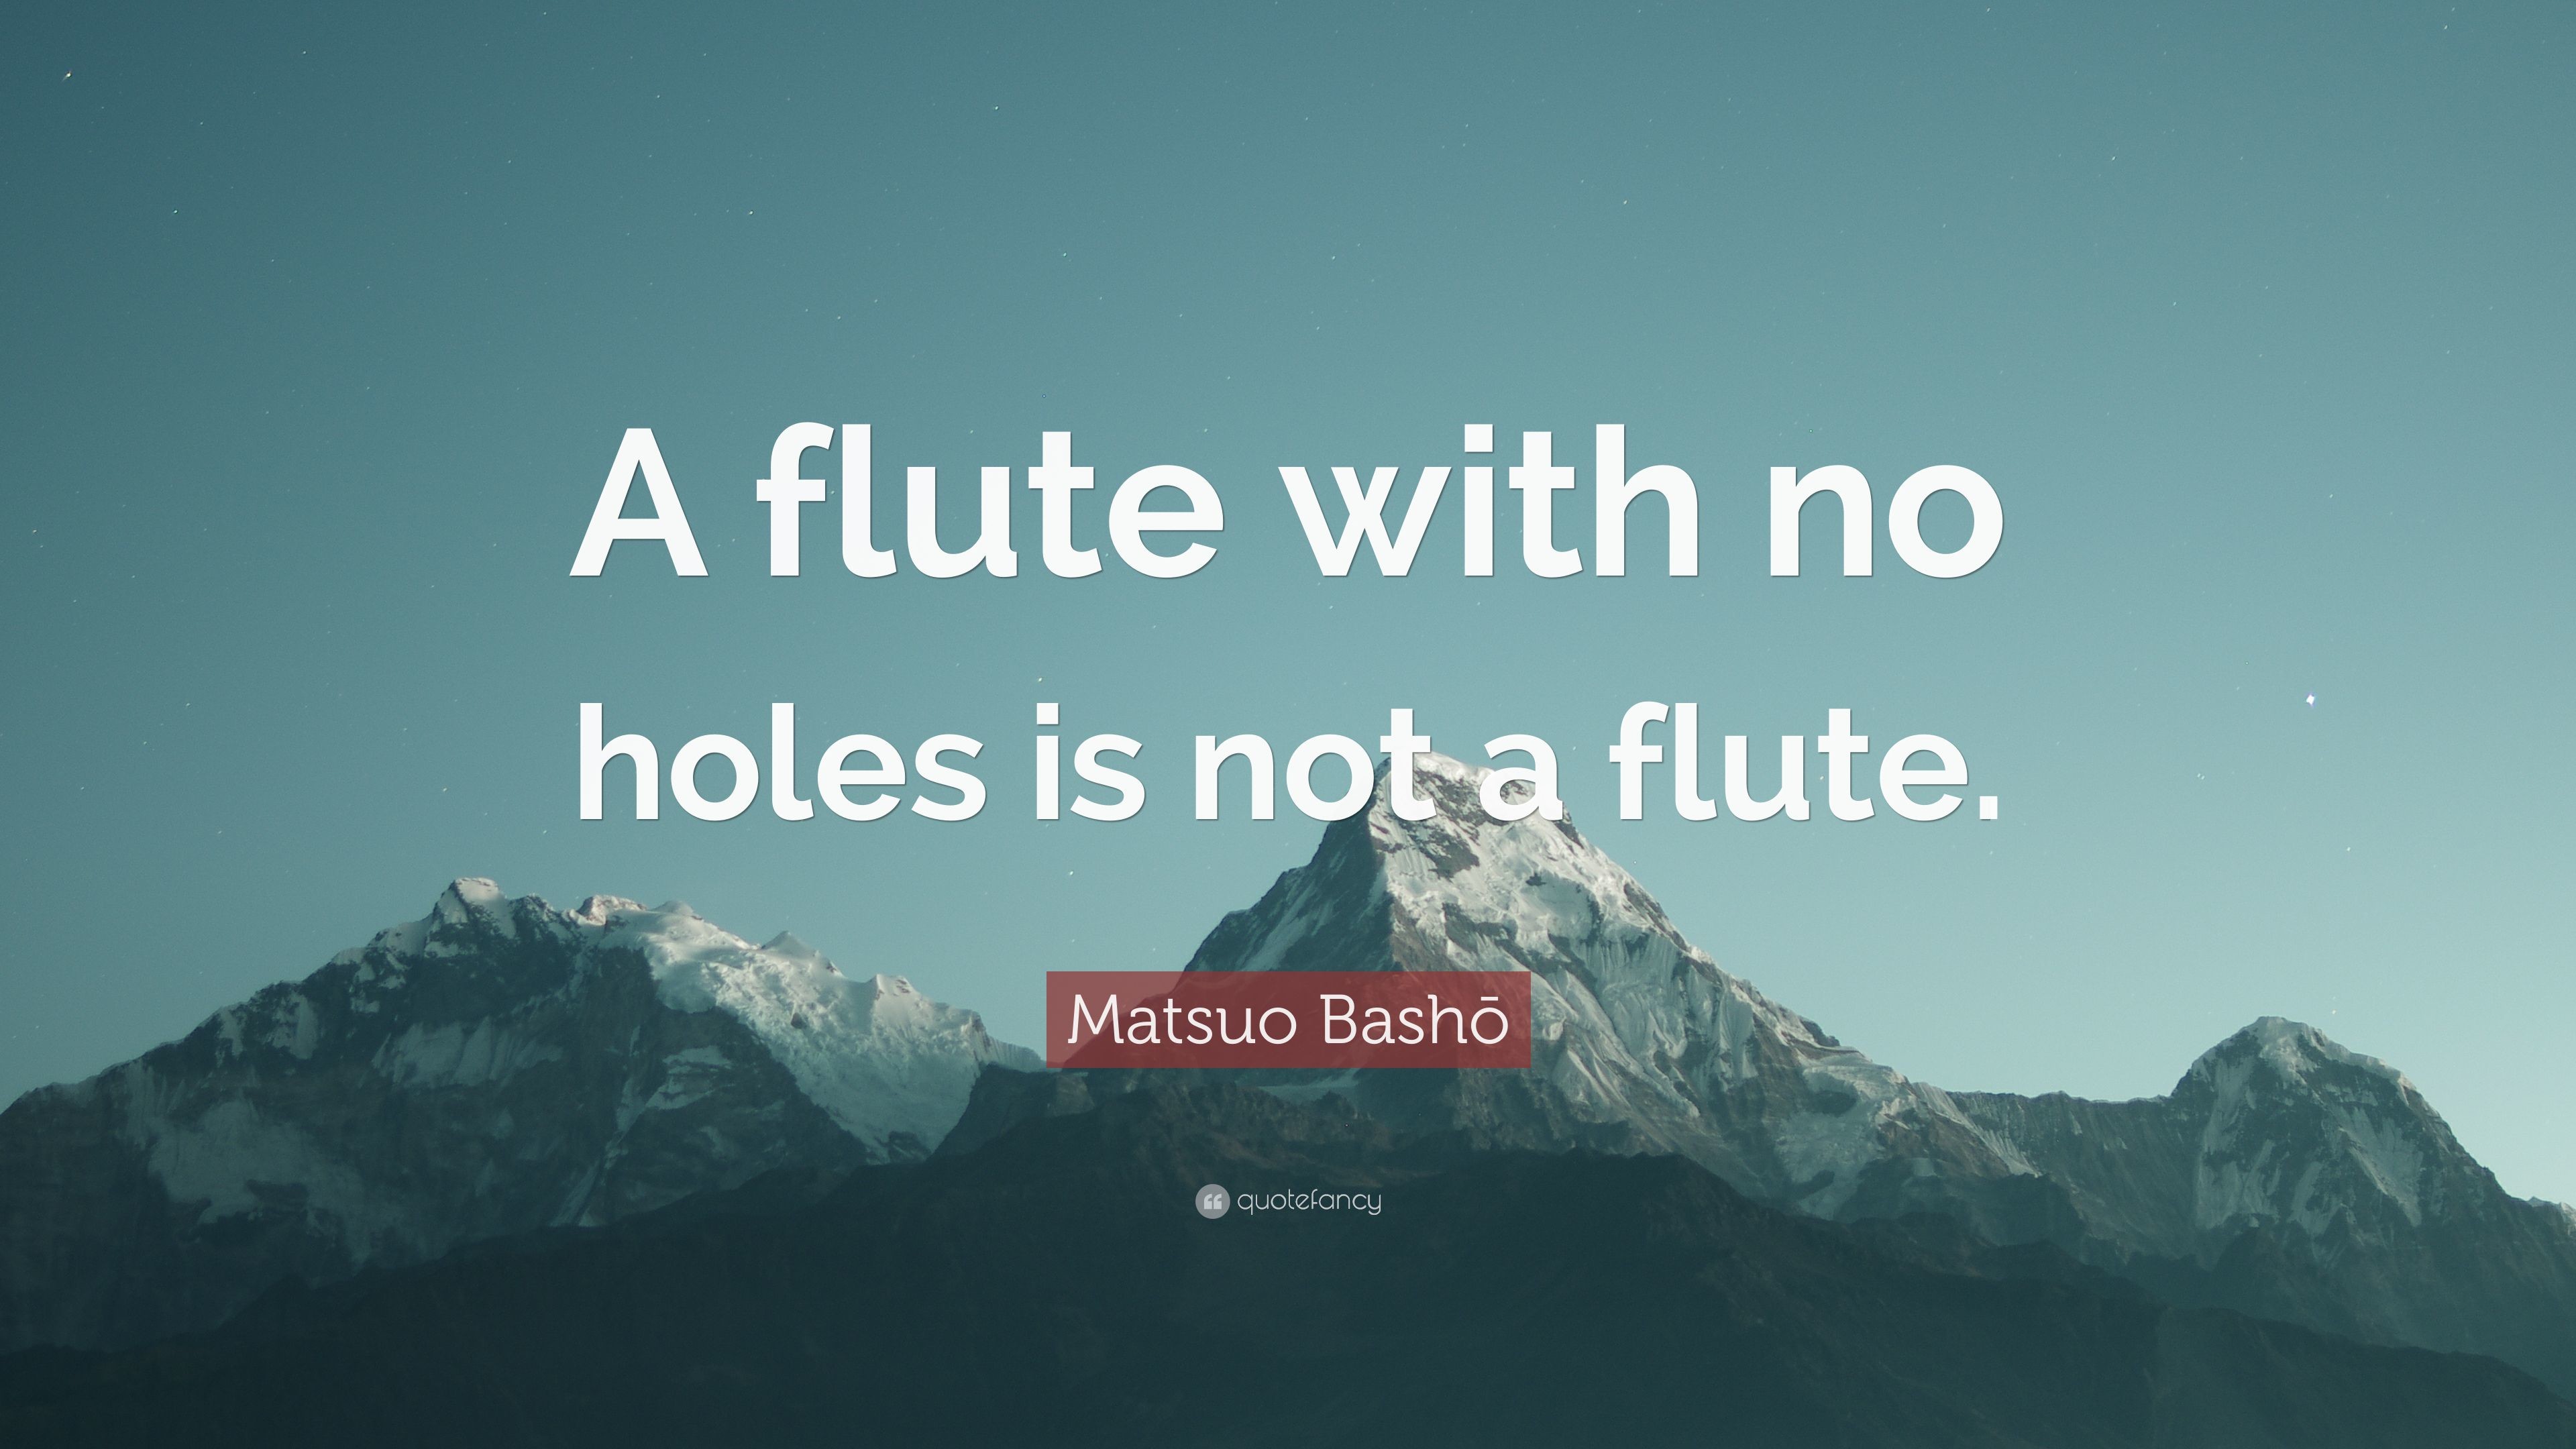 3840x2160 Matsuo BashÅ Quote: “A flute with no holes is not a flute.”